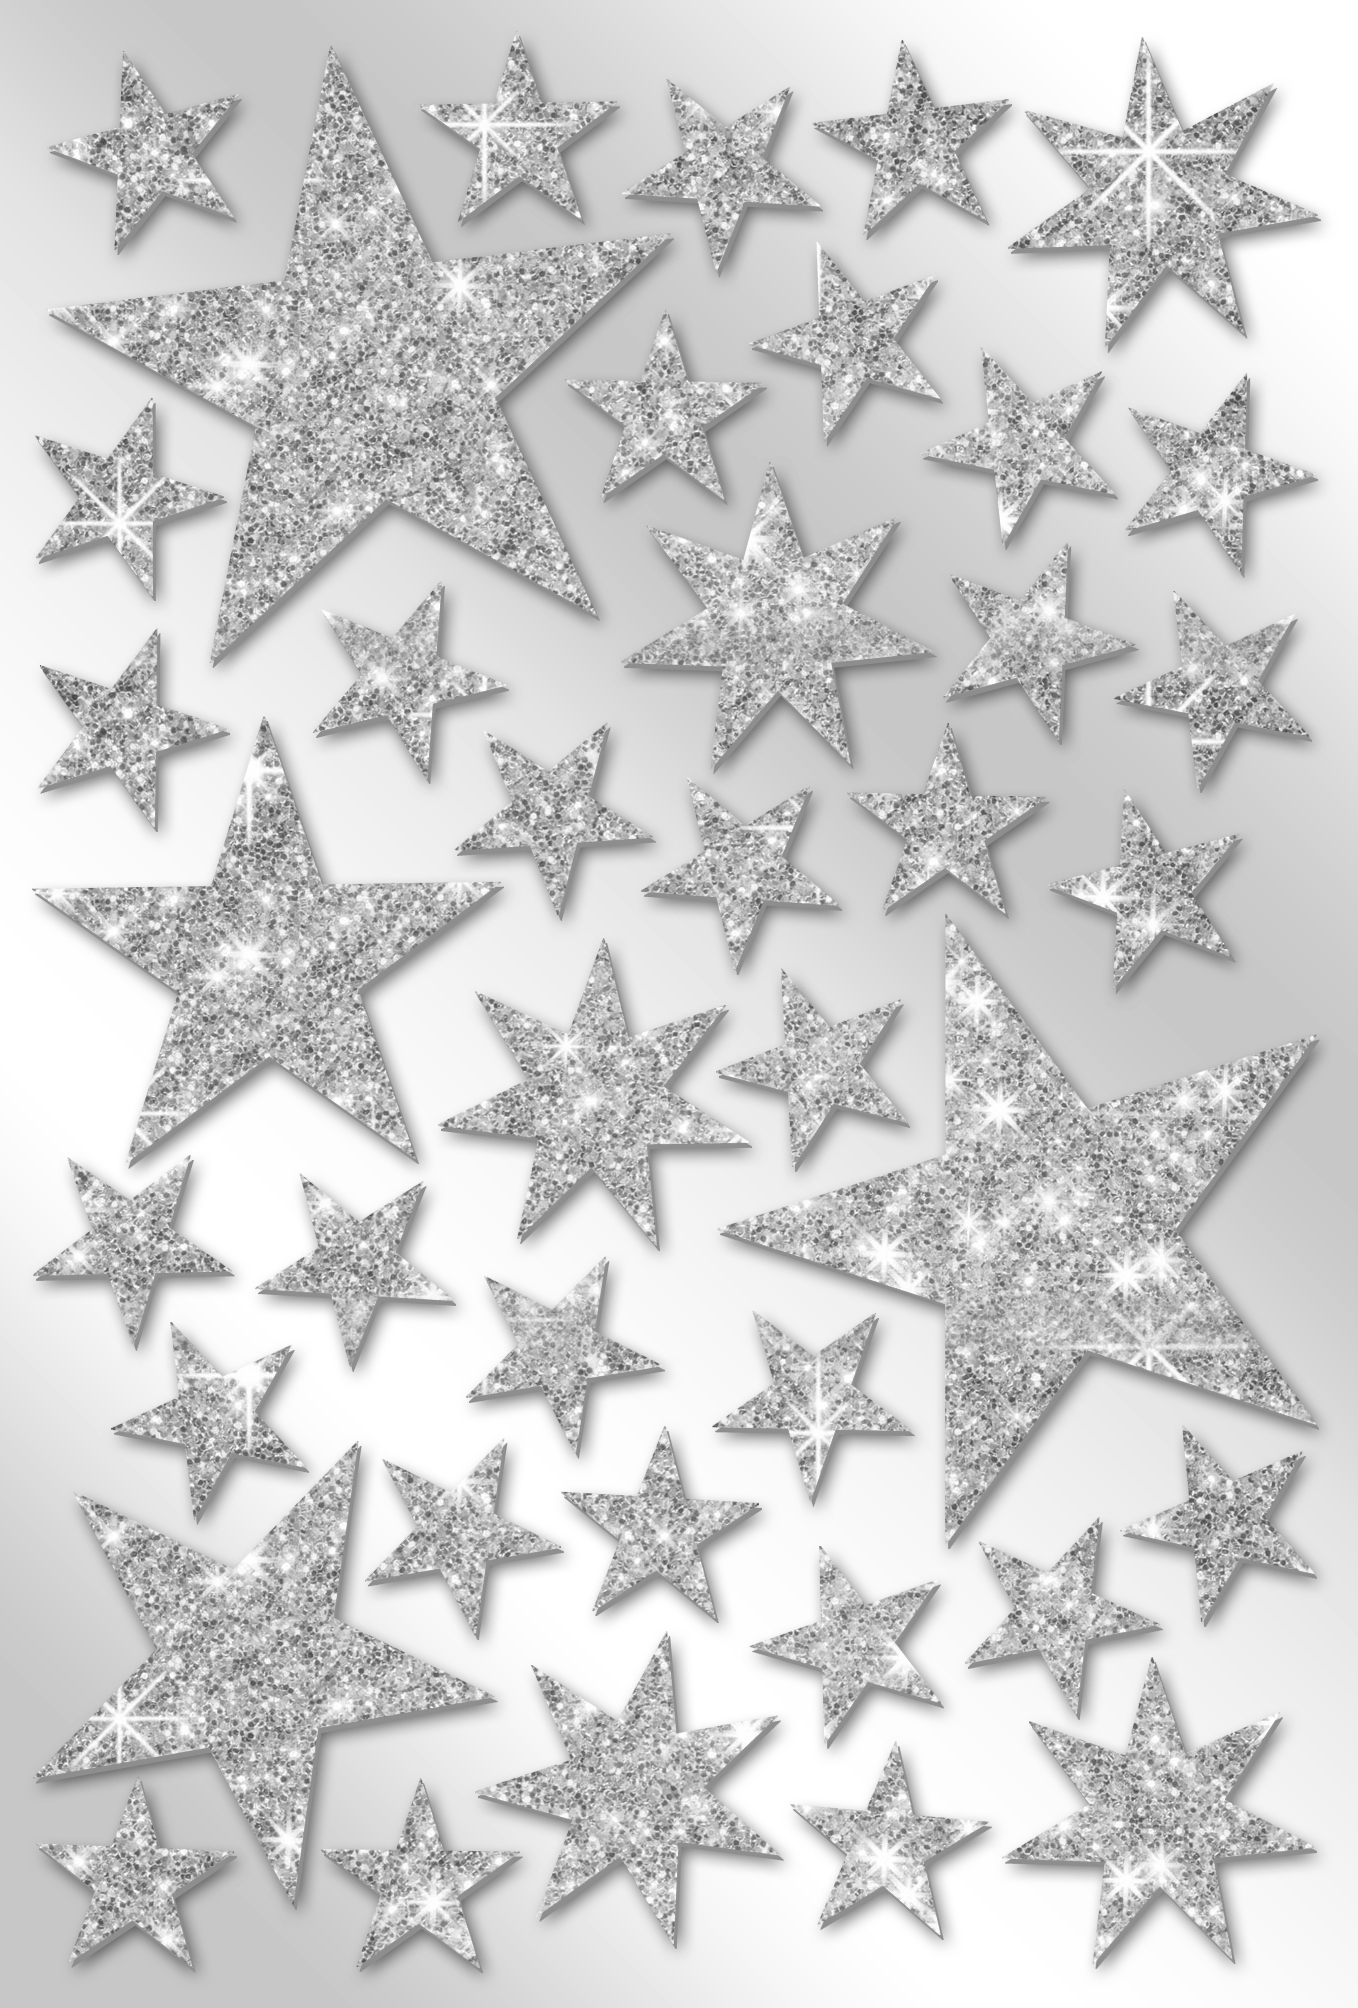 ZISCHKA Moosgummi Sticker Sterne 40 Stück Goldglitter selbstklebend  Kalender